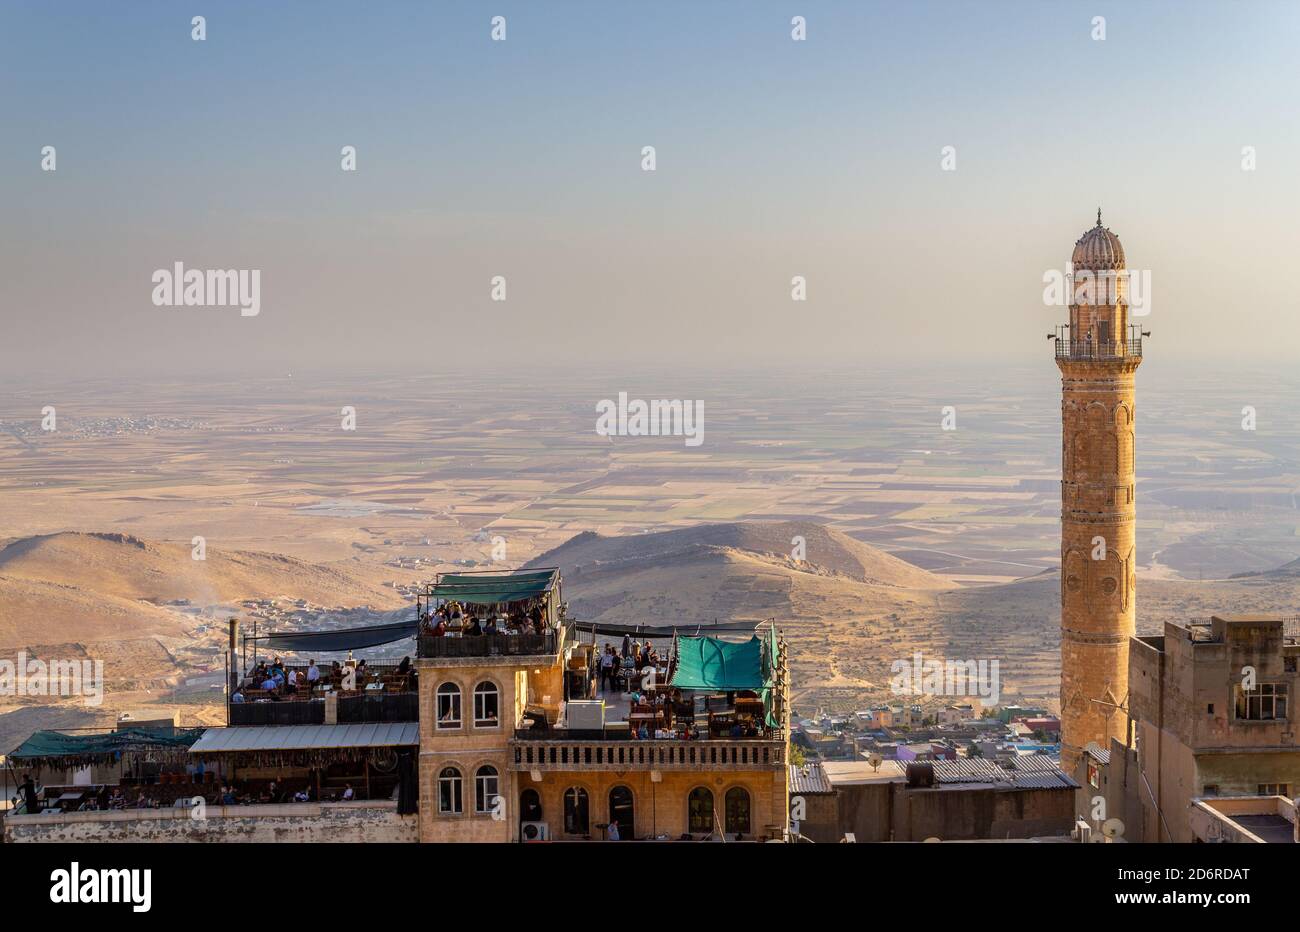 Mardin / Türkei - Oktober 10 2020: Mardin Ulu Cami Moschee Minarett und Menschen sitzen im Dachcafe, Mesopotamia Valley Blick Stockfoto